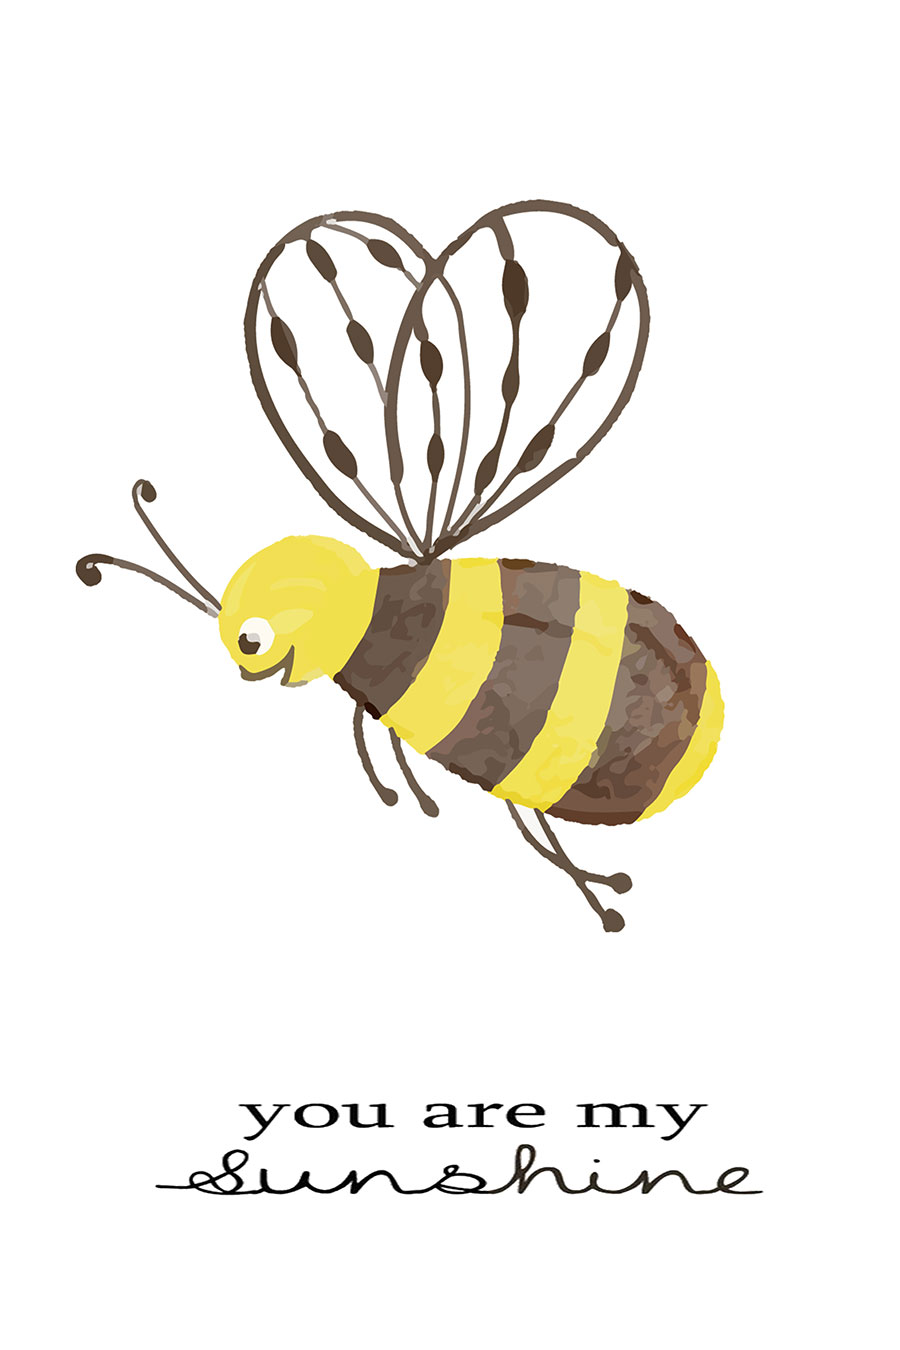 简单的水彩儿童画: 蜜蜂